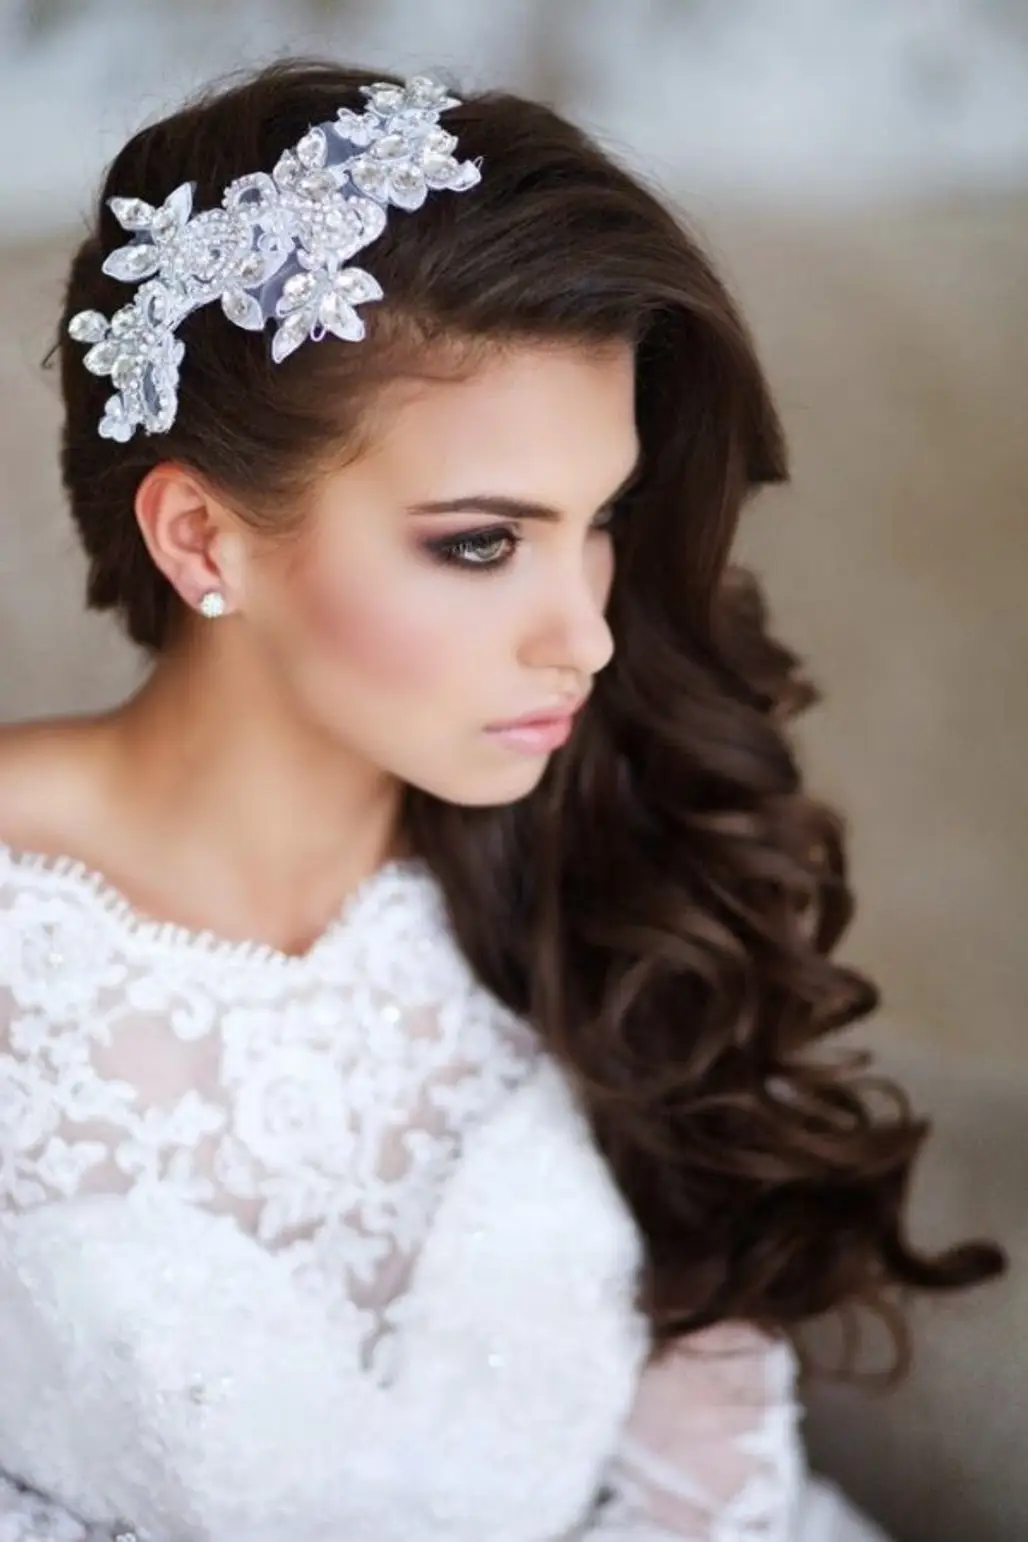 hair,clothing,bride,bridal accessory,wedding dress,